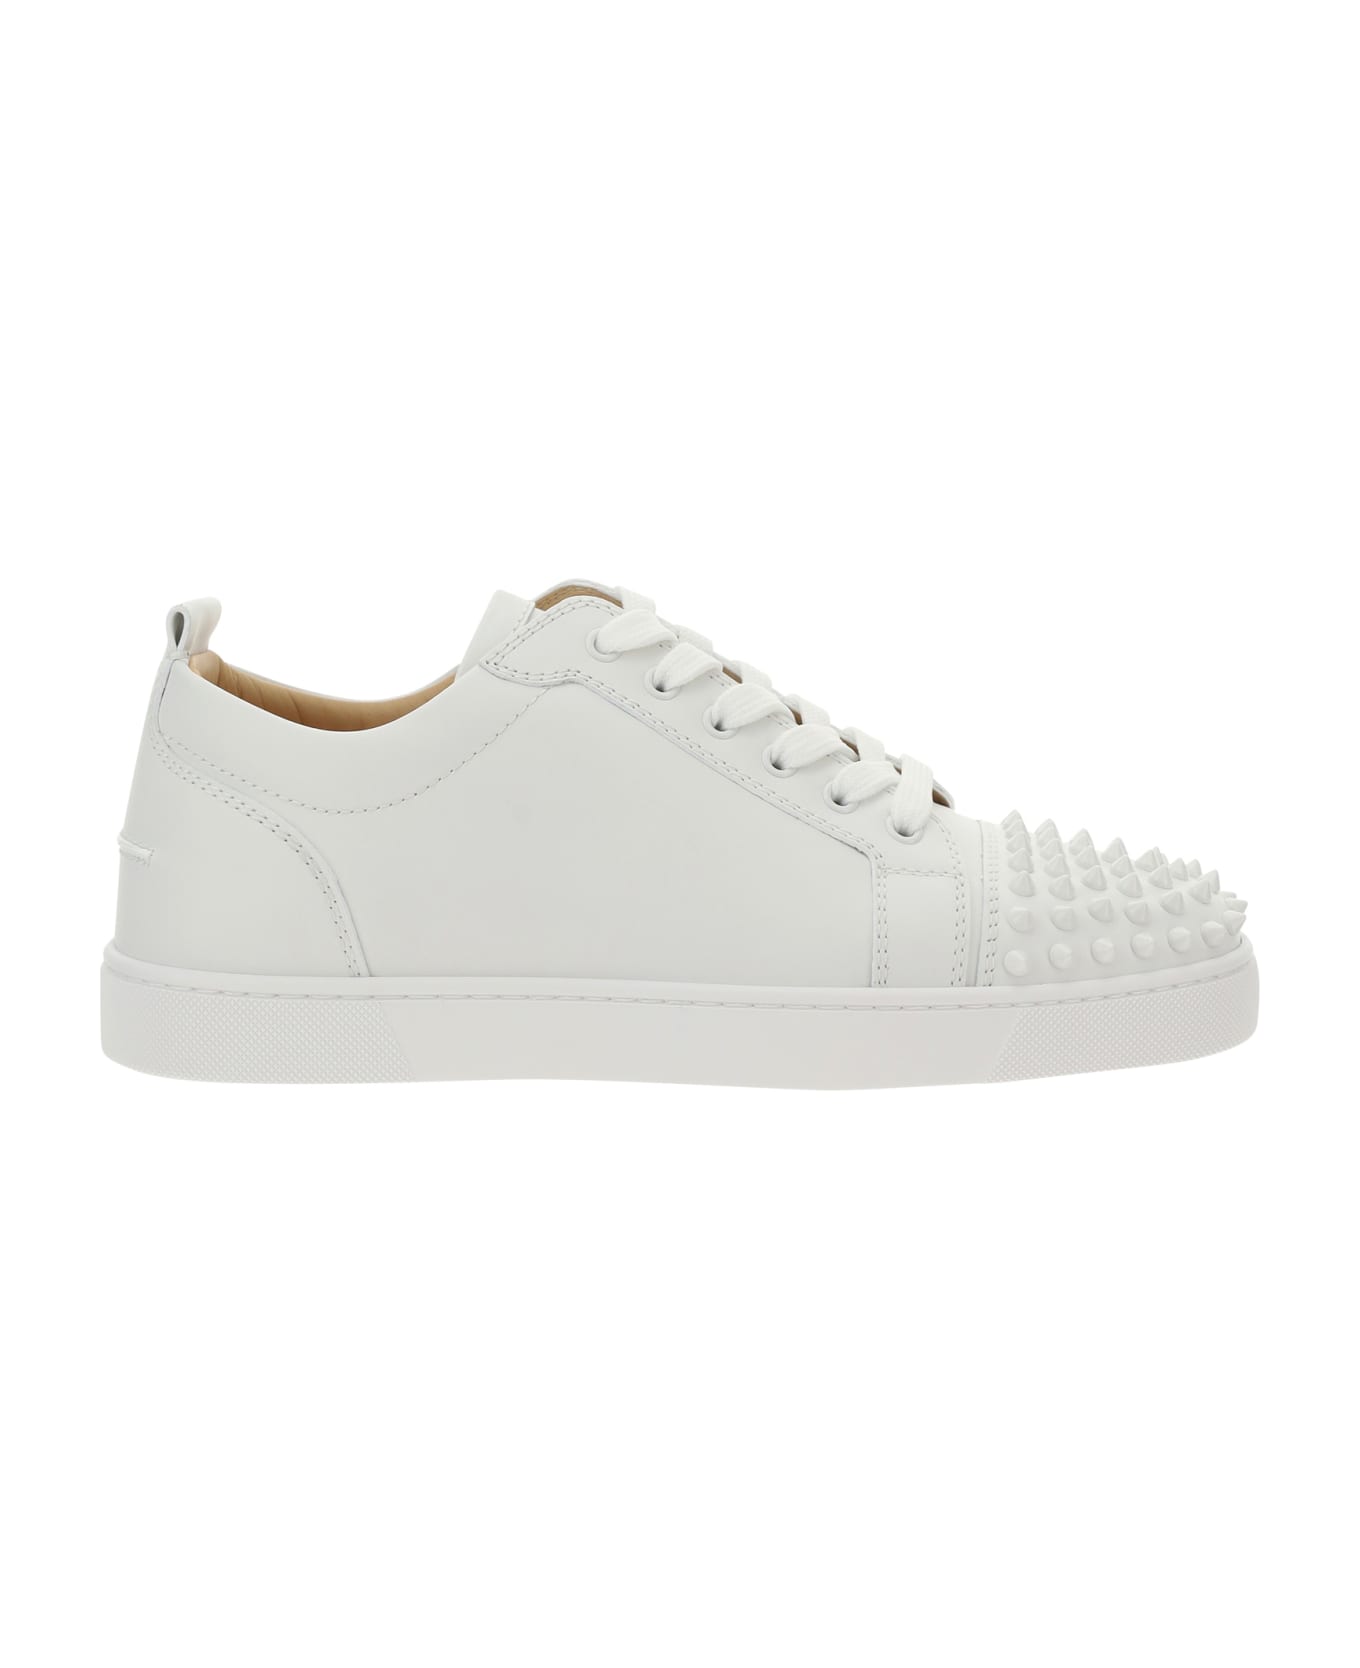 Christian Louboutin Louis Junior Spikes Sneakers - White White